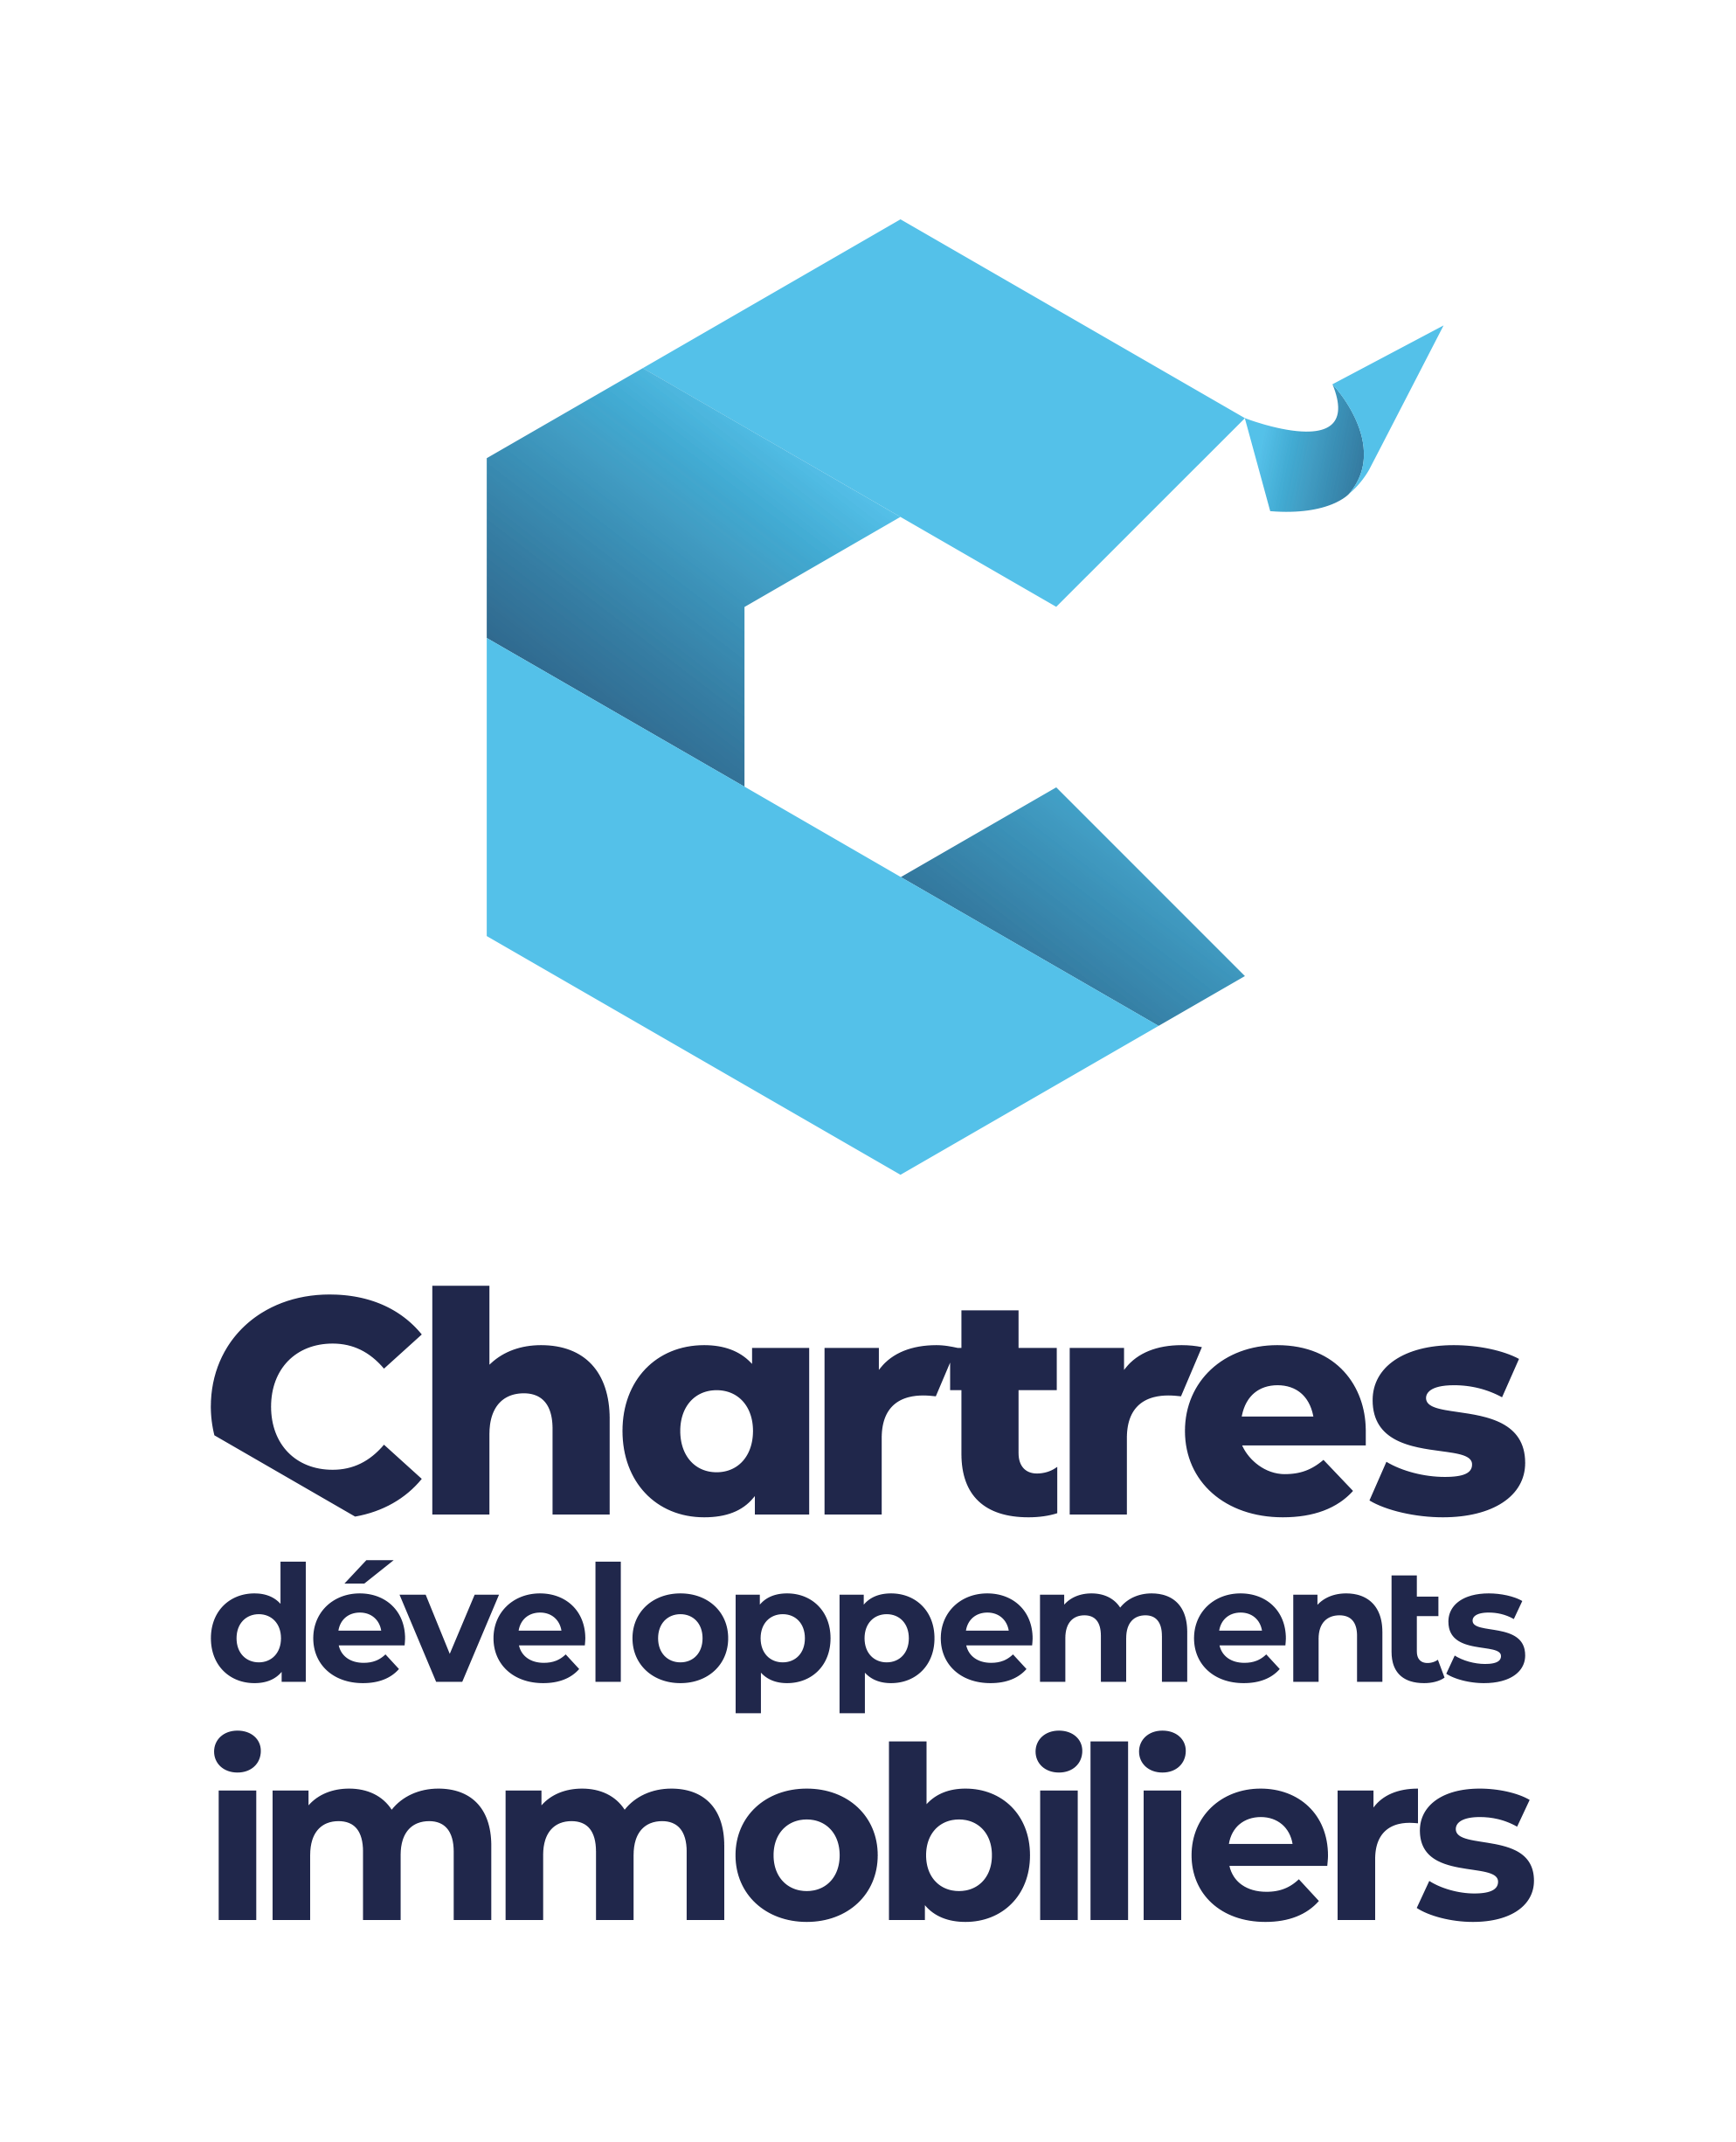 C'Chartres développement immobilier